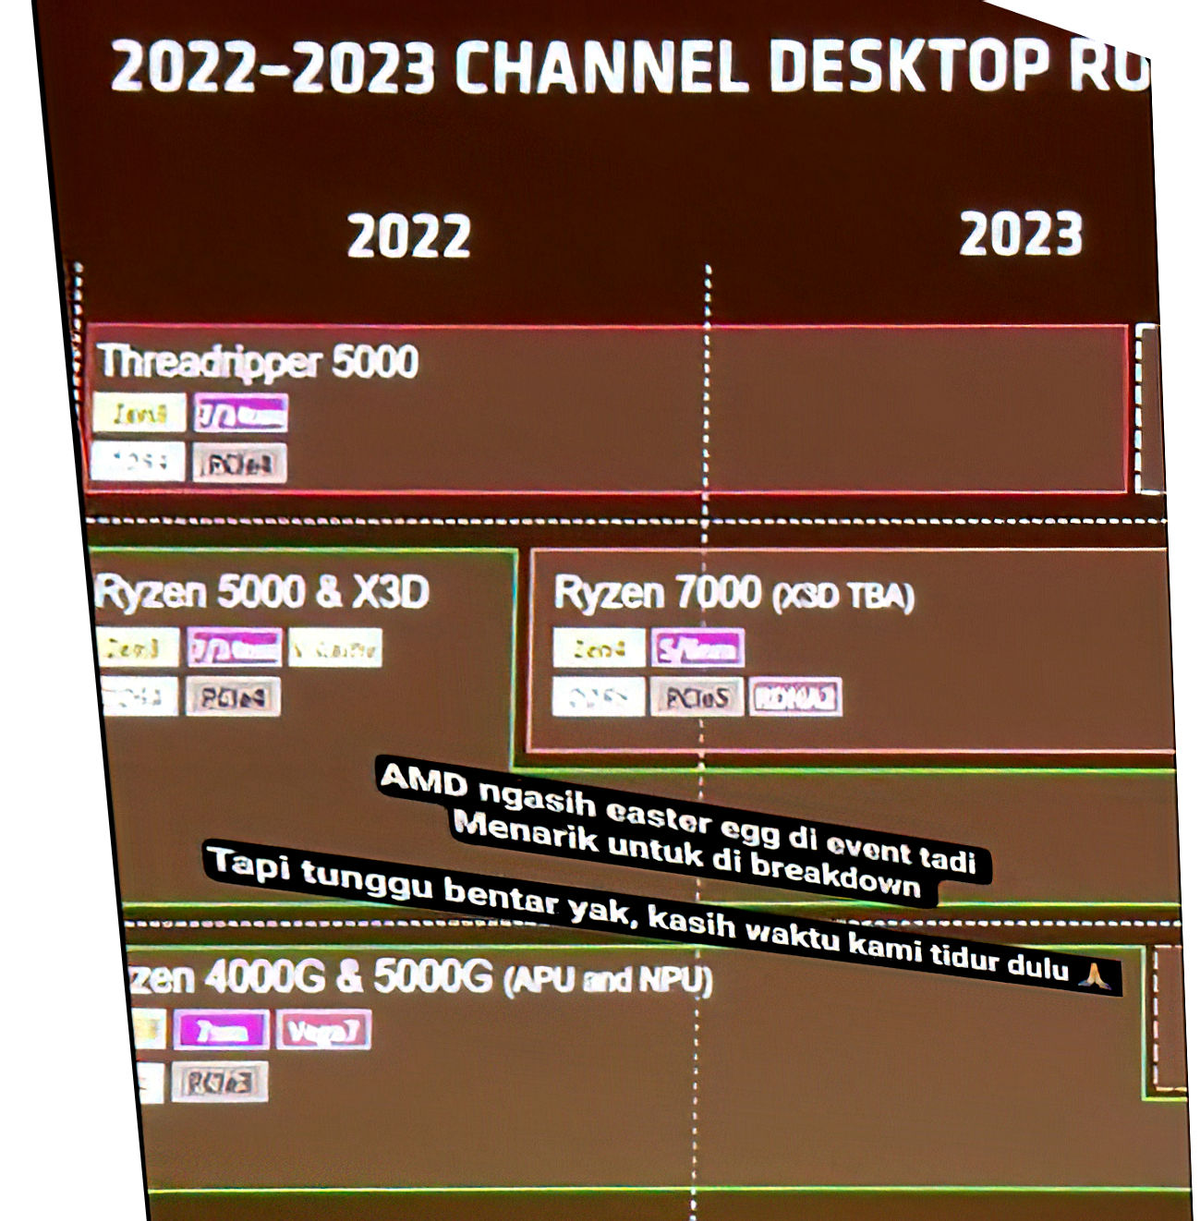 AMD Ryzen 7000 с 3D V-Cache ожидаются в 2023 году